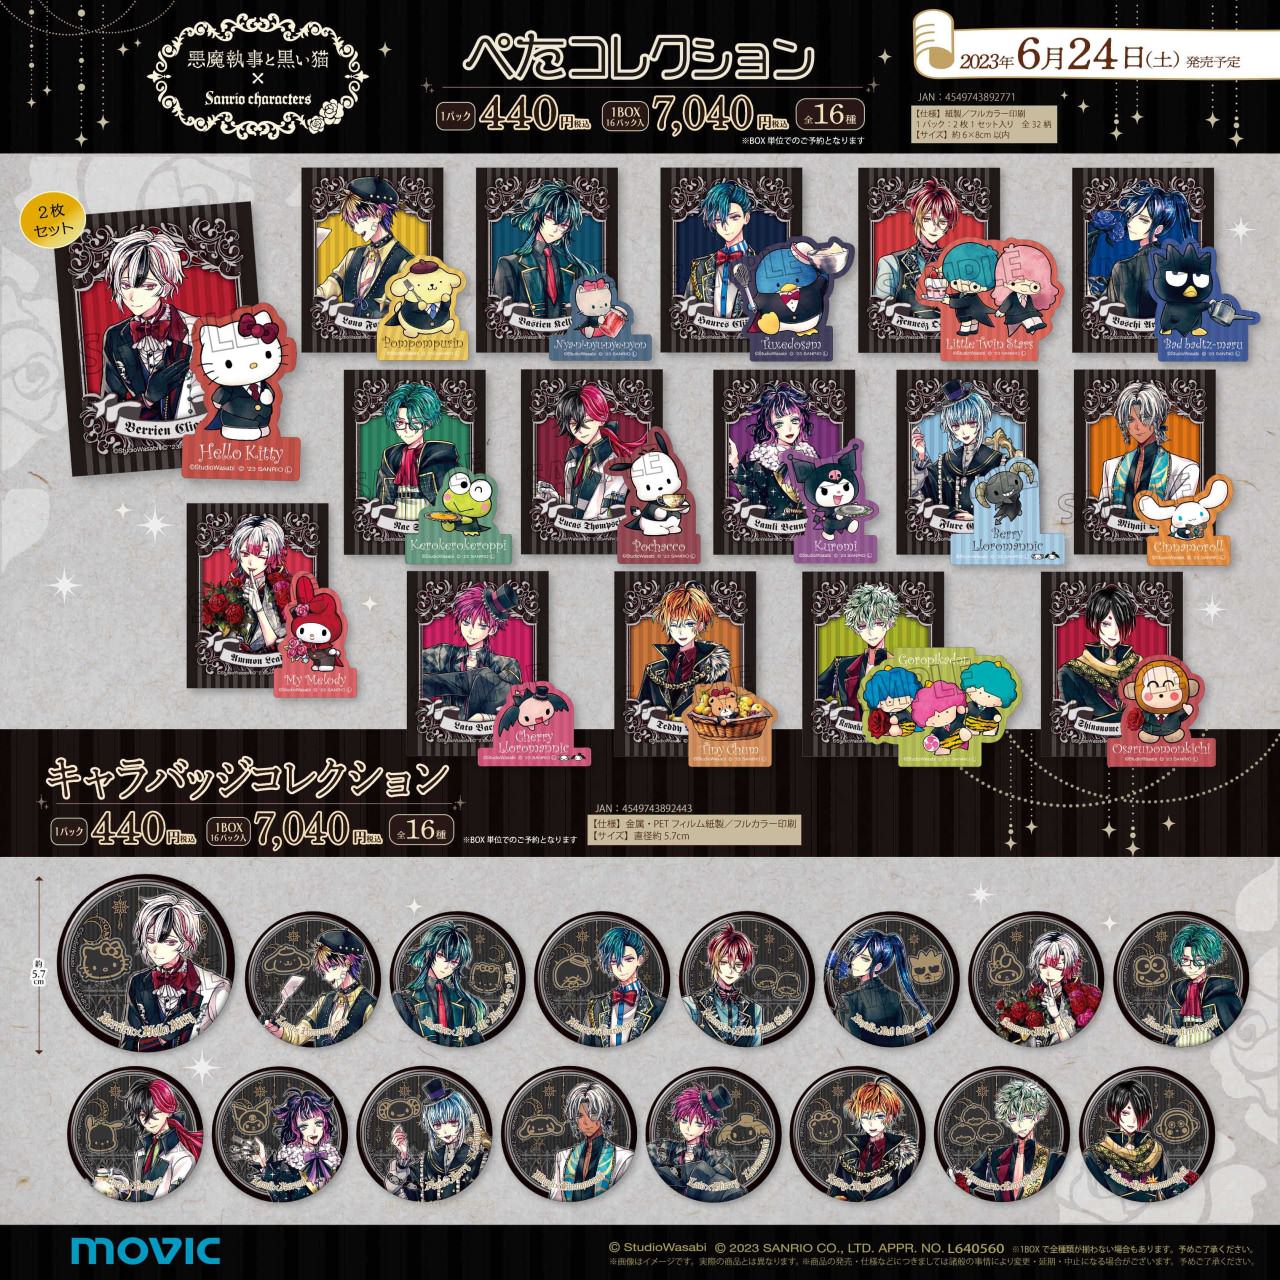 悪魔執事と黒い猫 × サンリオ コラボ 6月24日よりアニメイトフェア開催!